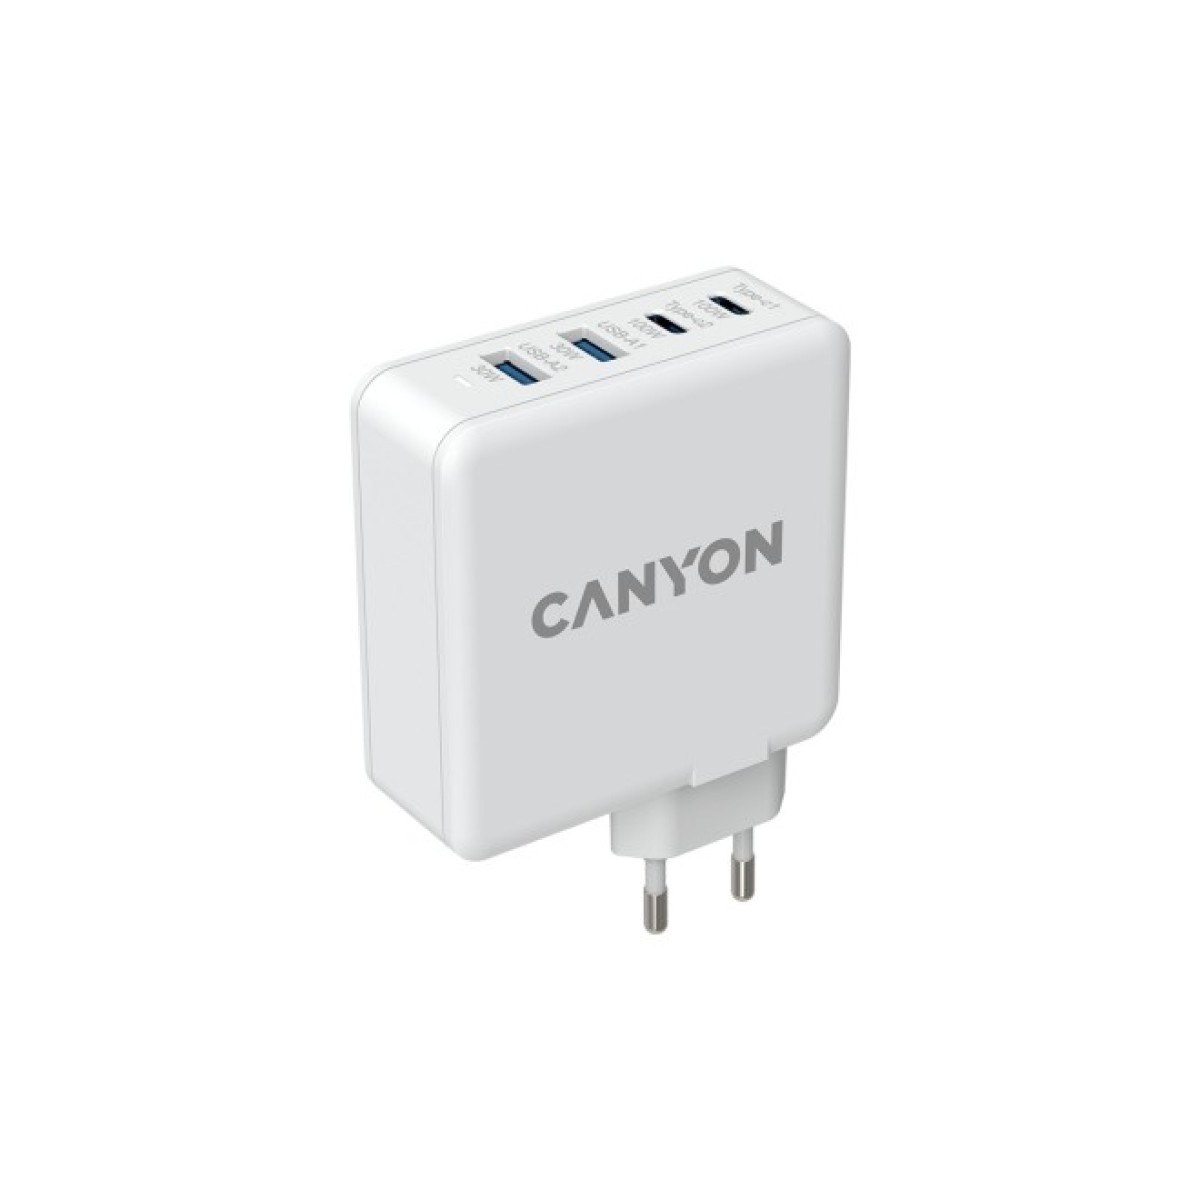 Зарядное устройство Canyon GAN 100W (CND-CHA100W01) 256_256.jpg